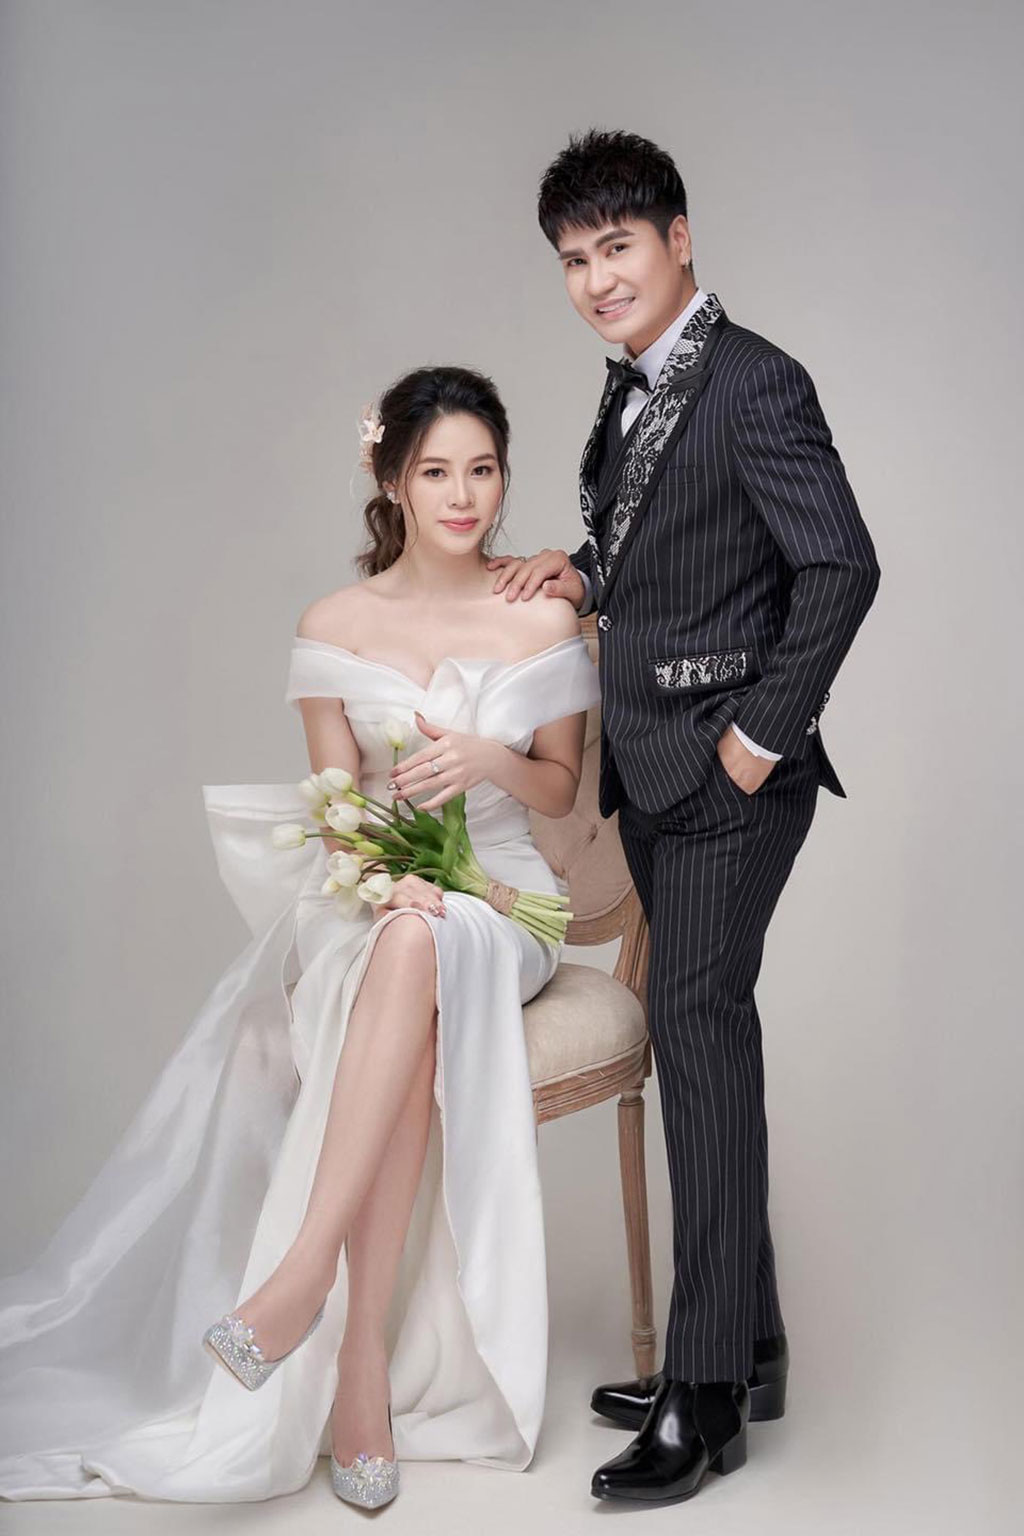 Vua nhạc sàn\' Lương Gia Huy kết hôn, sinh con với vợ trẻ kém 18 tuổi